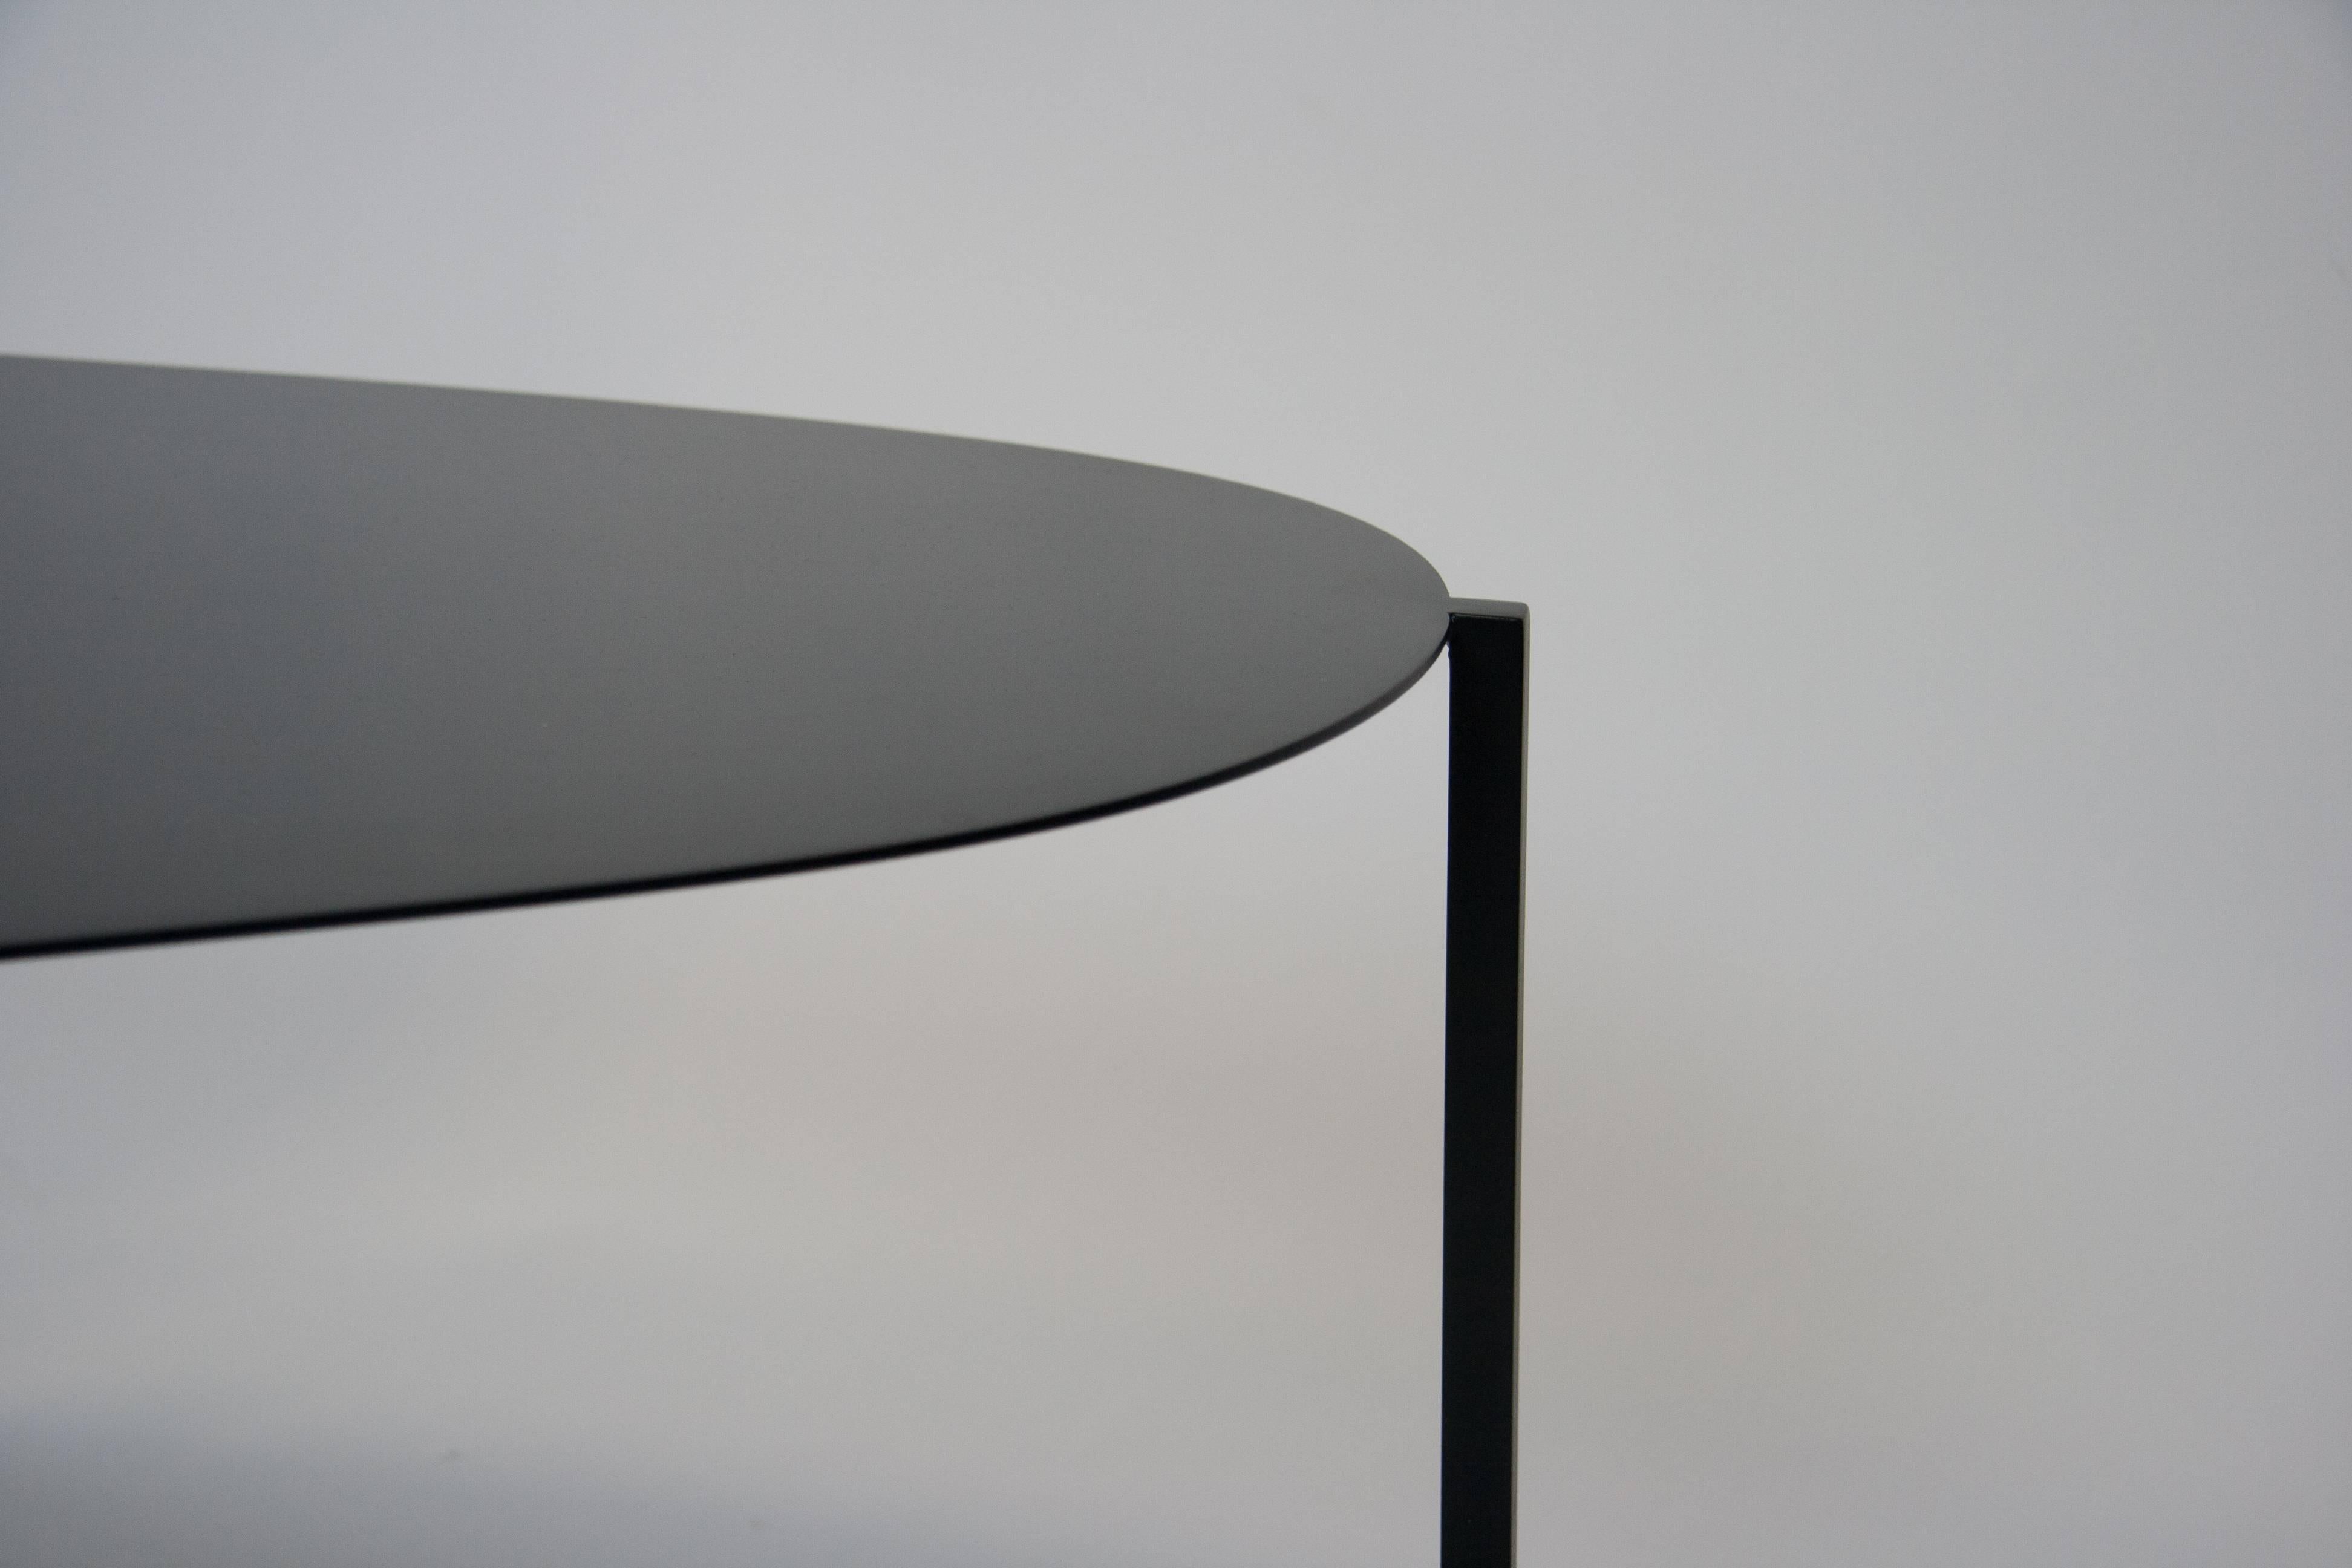 La table basse sculpturale organique, minimale et moderne, peinte à la main, Ishicoro 2, a été inspirée par le mot japonais signifiant 